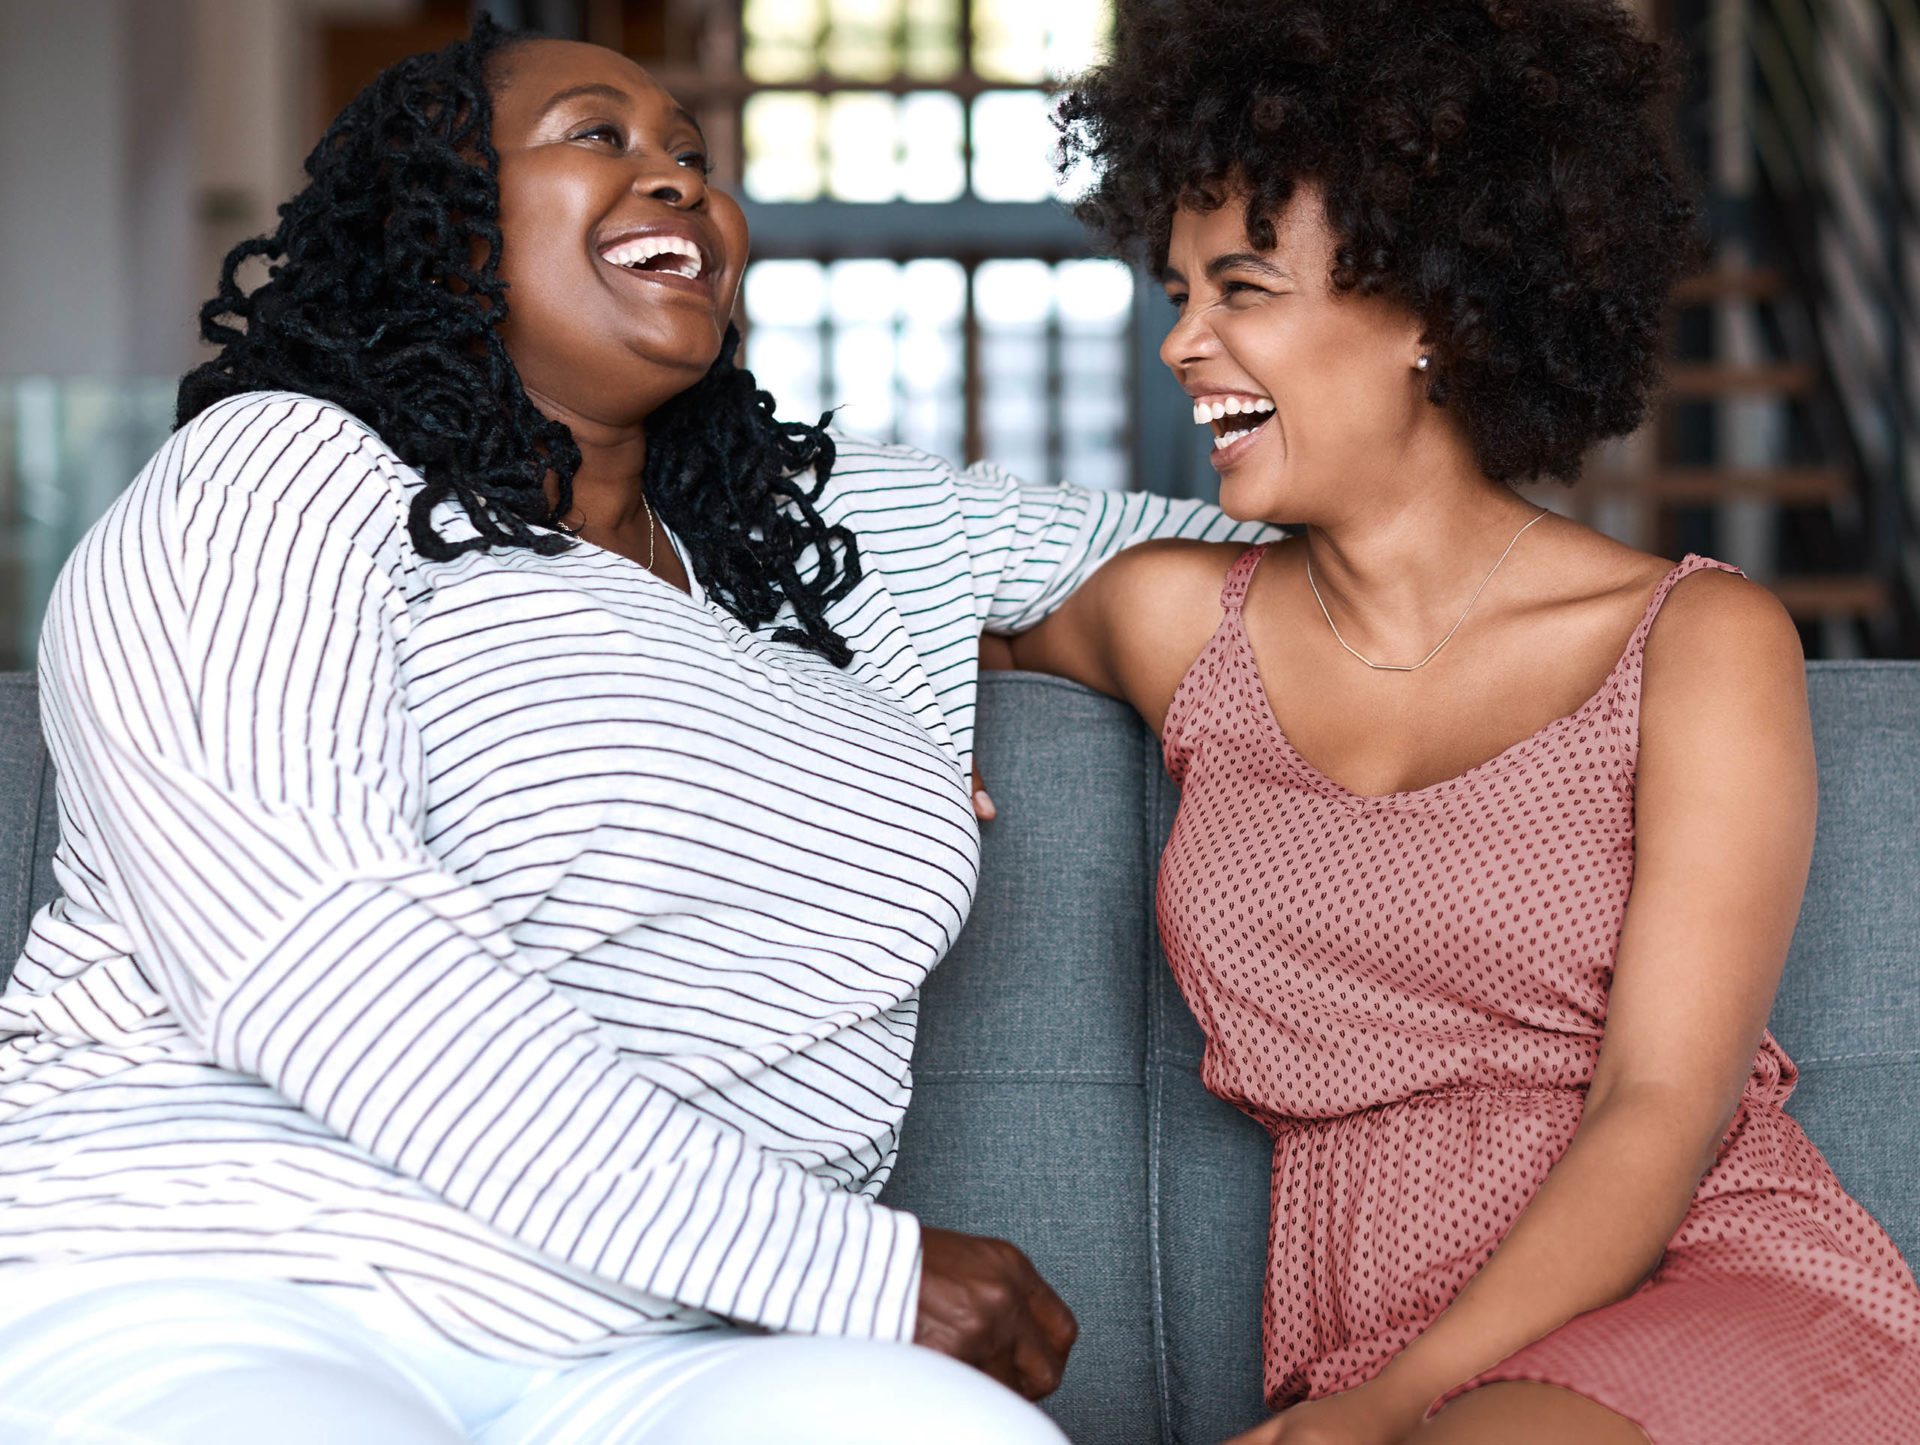 Dos mujeres jóvenes riendo en un sofá.